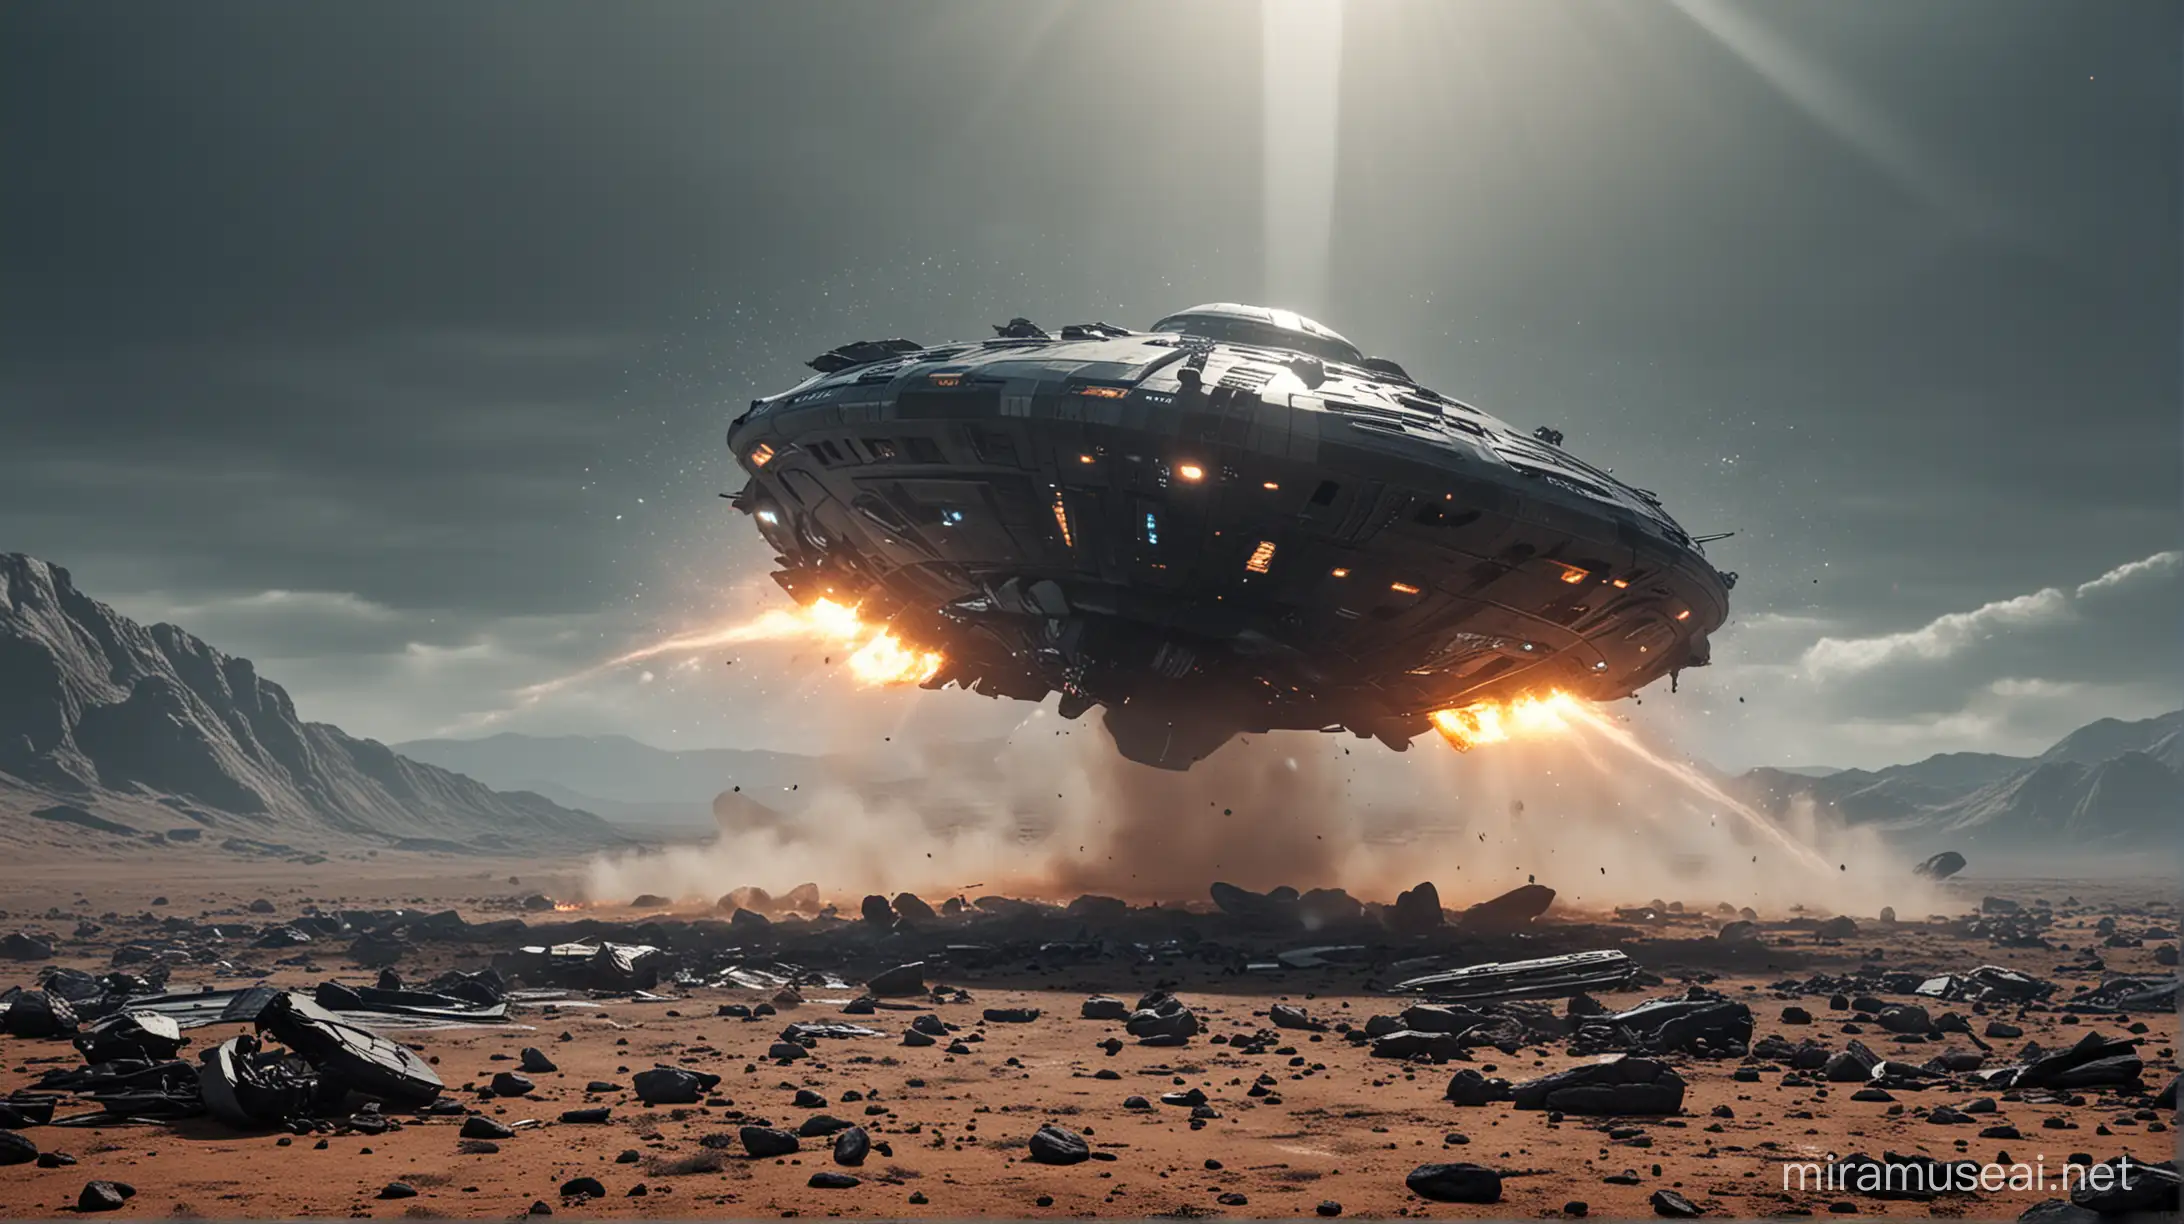 SciFi UFO Crash Scene with Futuristic Debris